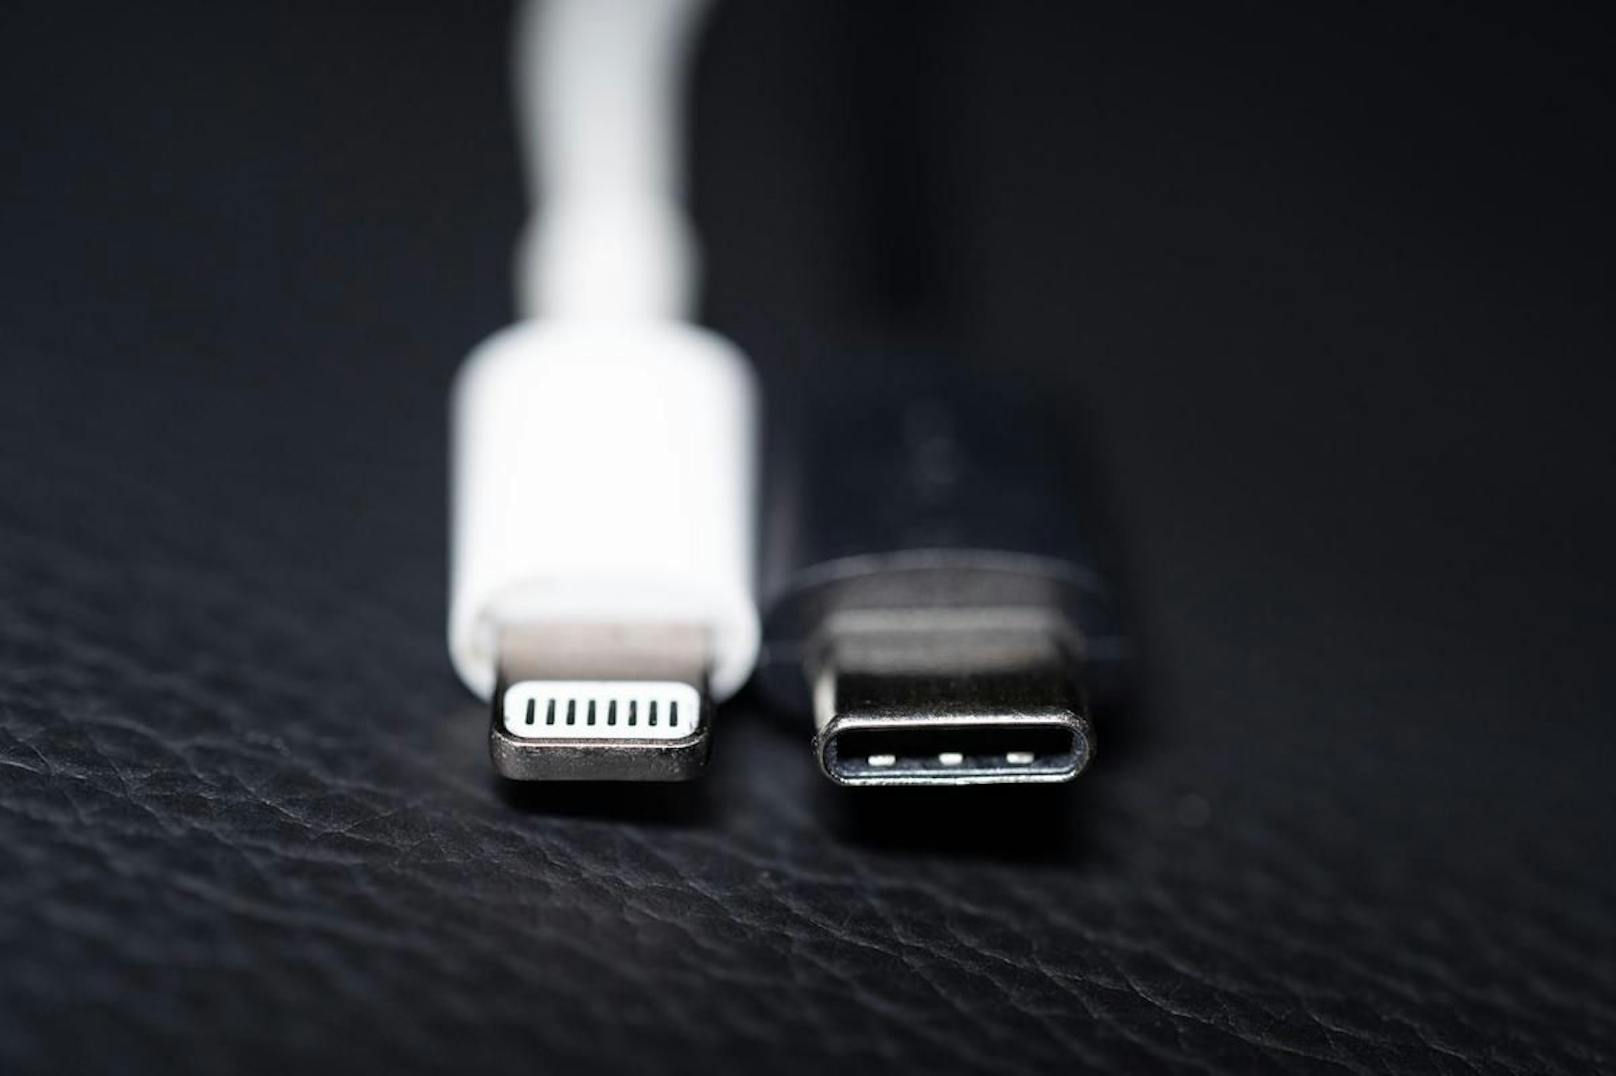 Die EU-Kommission hat einen Vorschlag für eine einheitliche Handy-Ladebuchse gemacht. Das Bild zeigt einen Lightning-Ladestecker von Apple (links) und einen USB-C-Ladestecker (rechts).